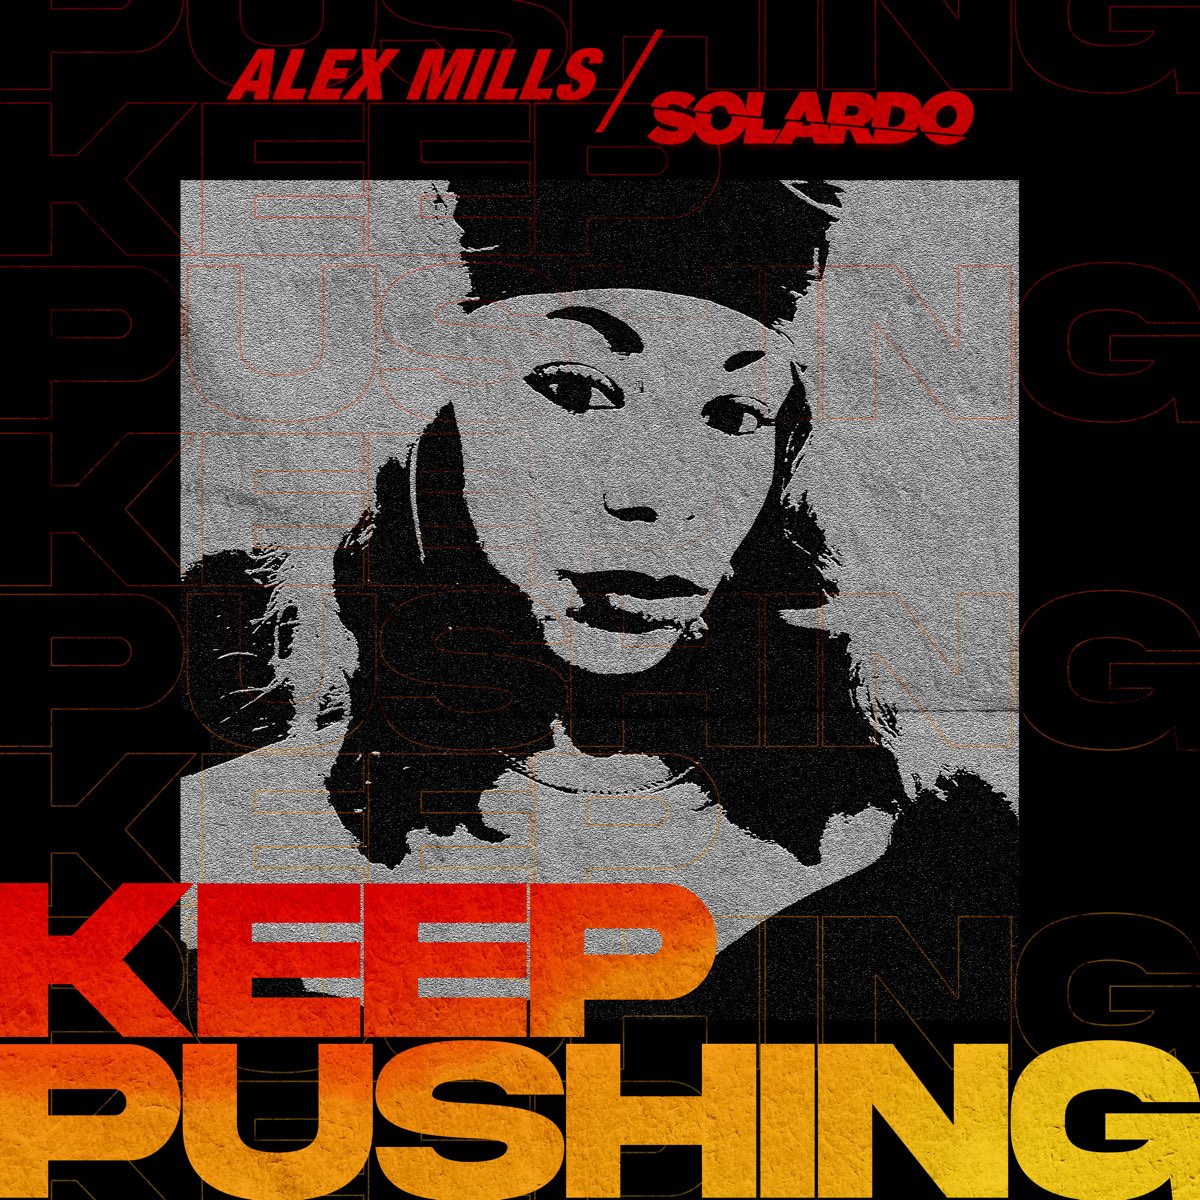 Alex Mills & Solardo Keep Pushing cover artwork